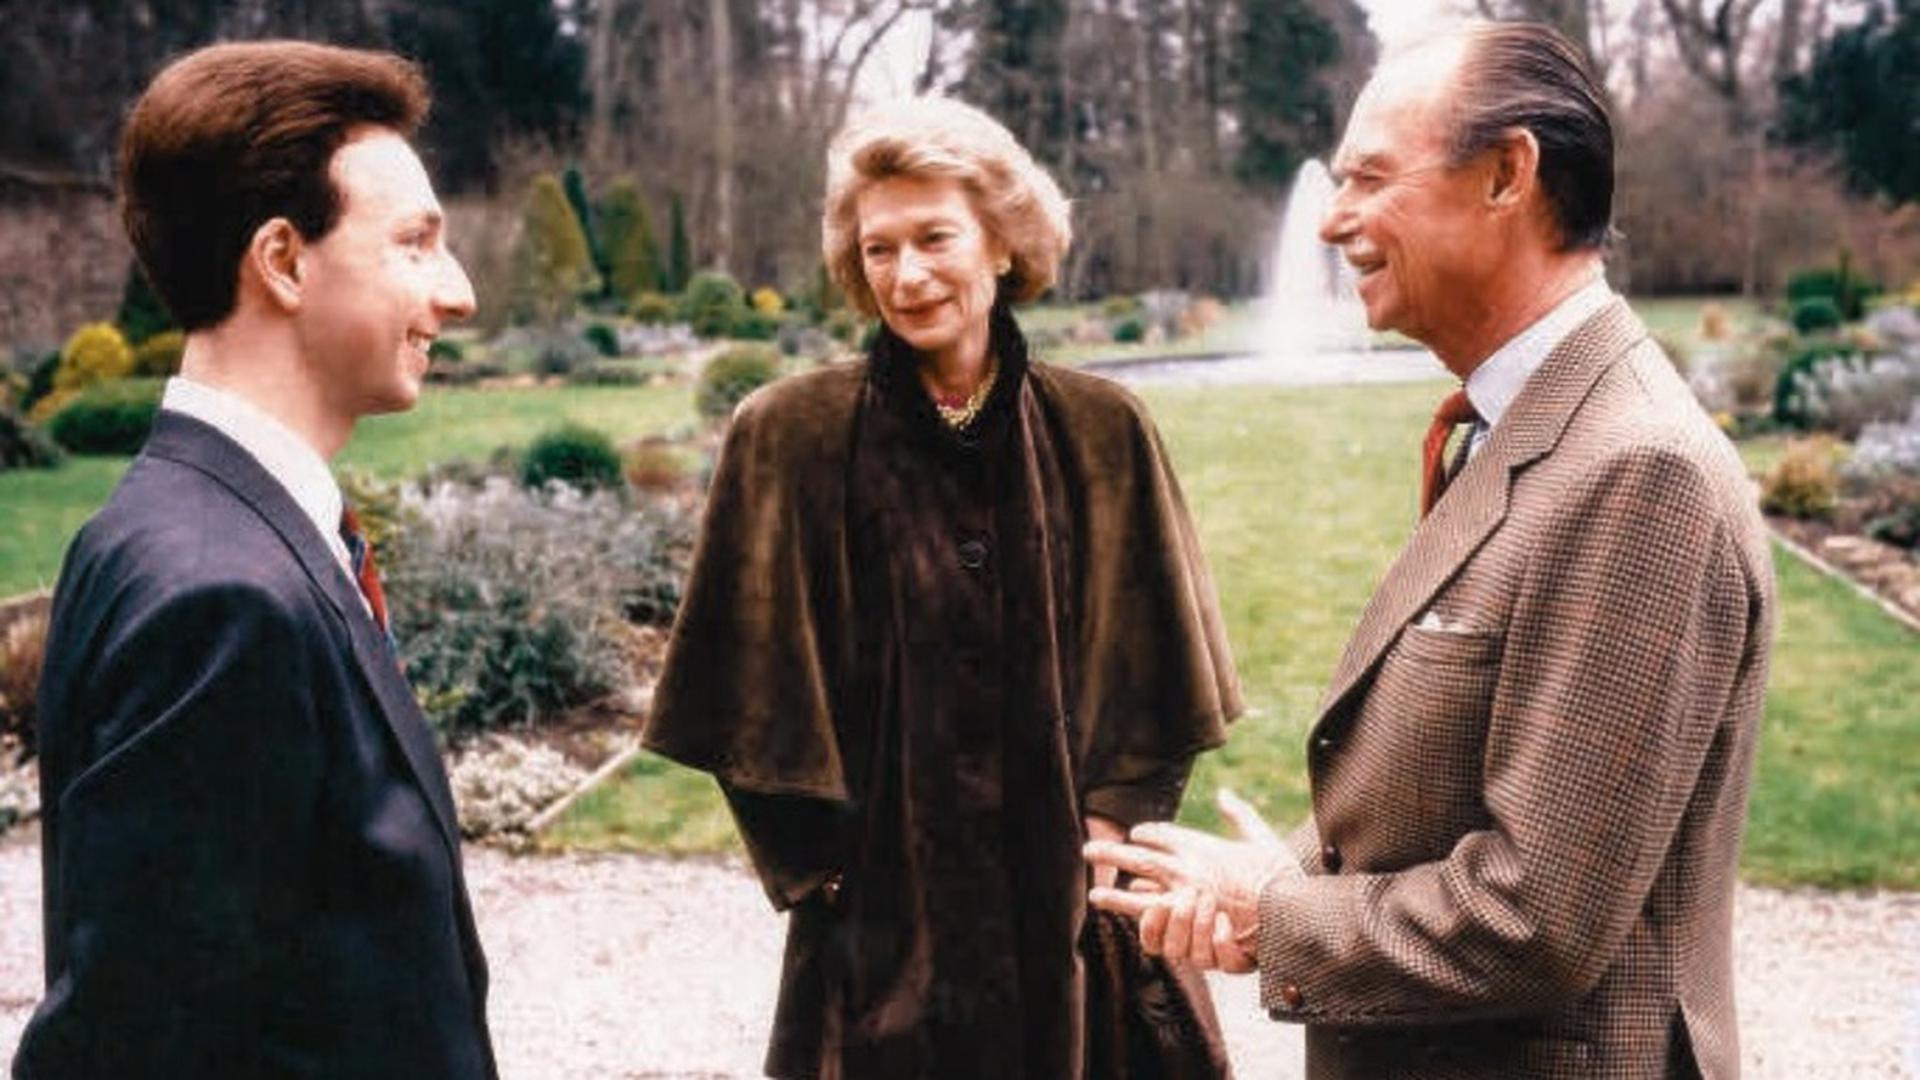 Schon 1989 interviewte Stéphane Bern den Großherzog sowie seine Frau Joséphine-Charlotte.